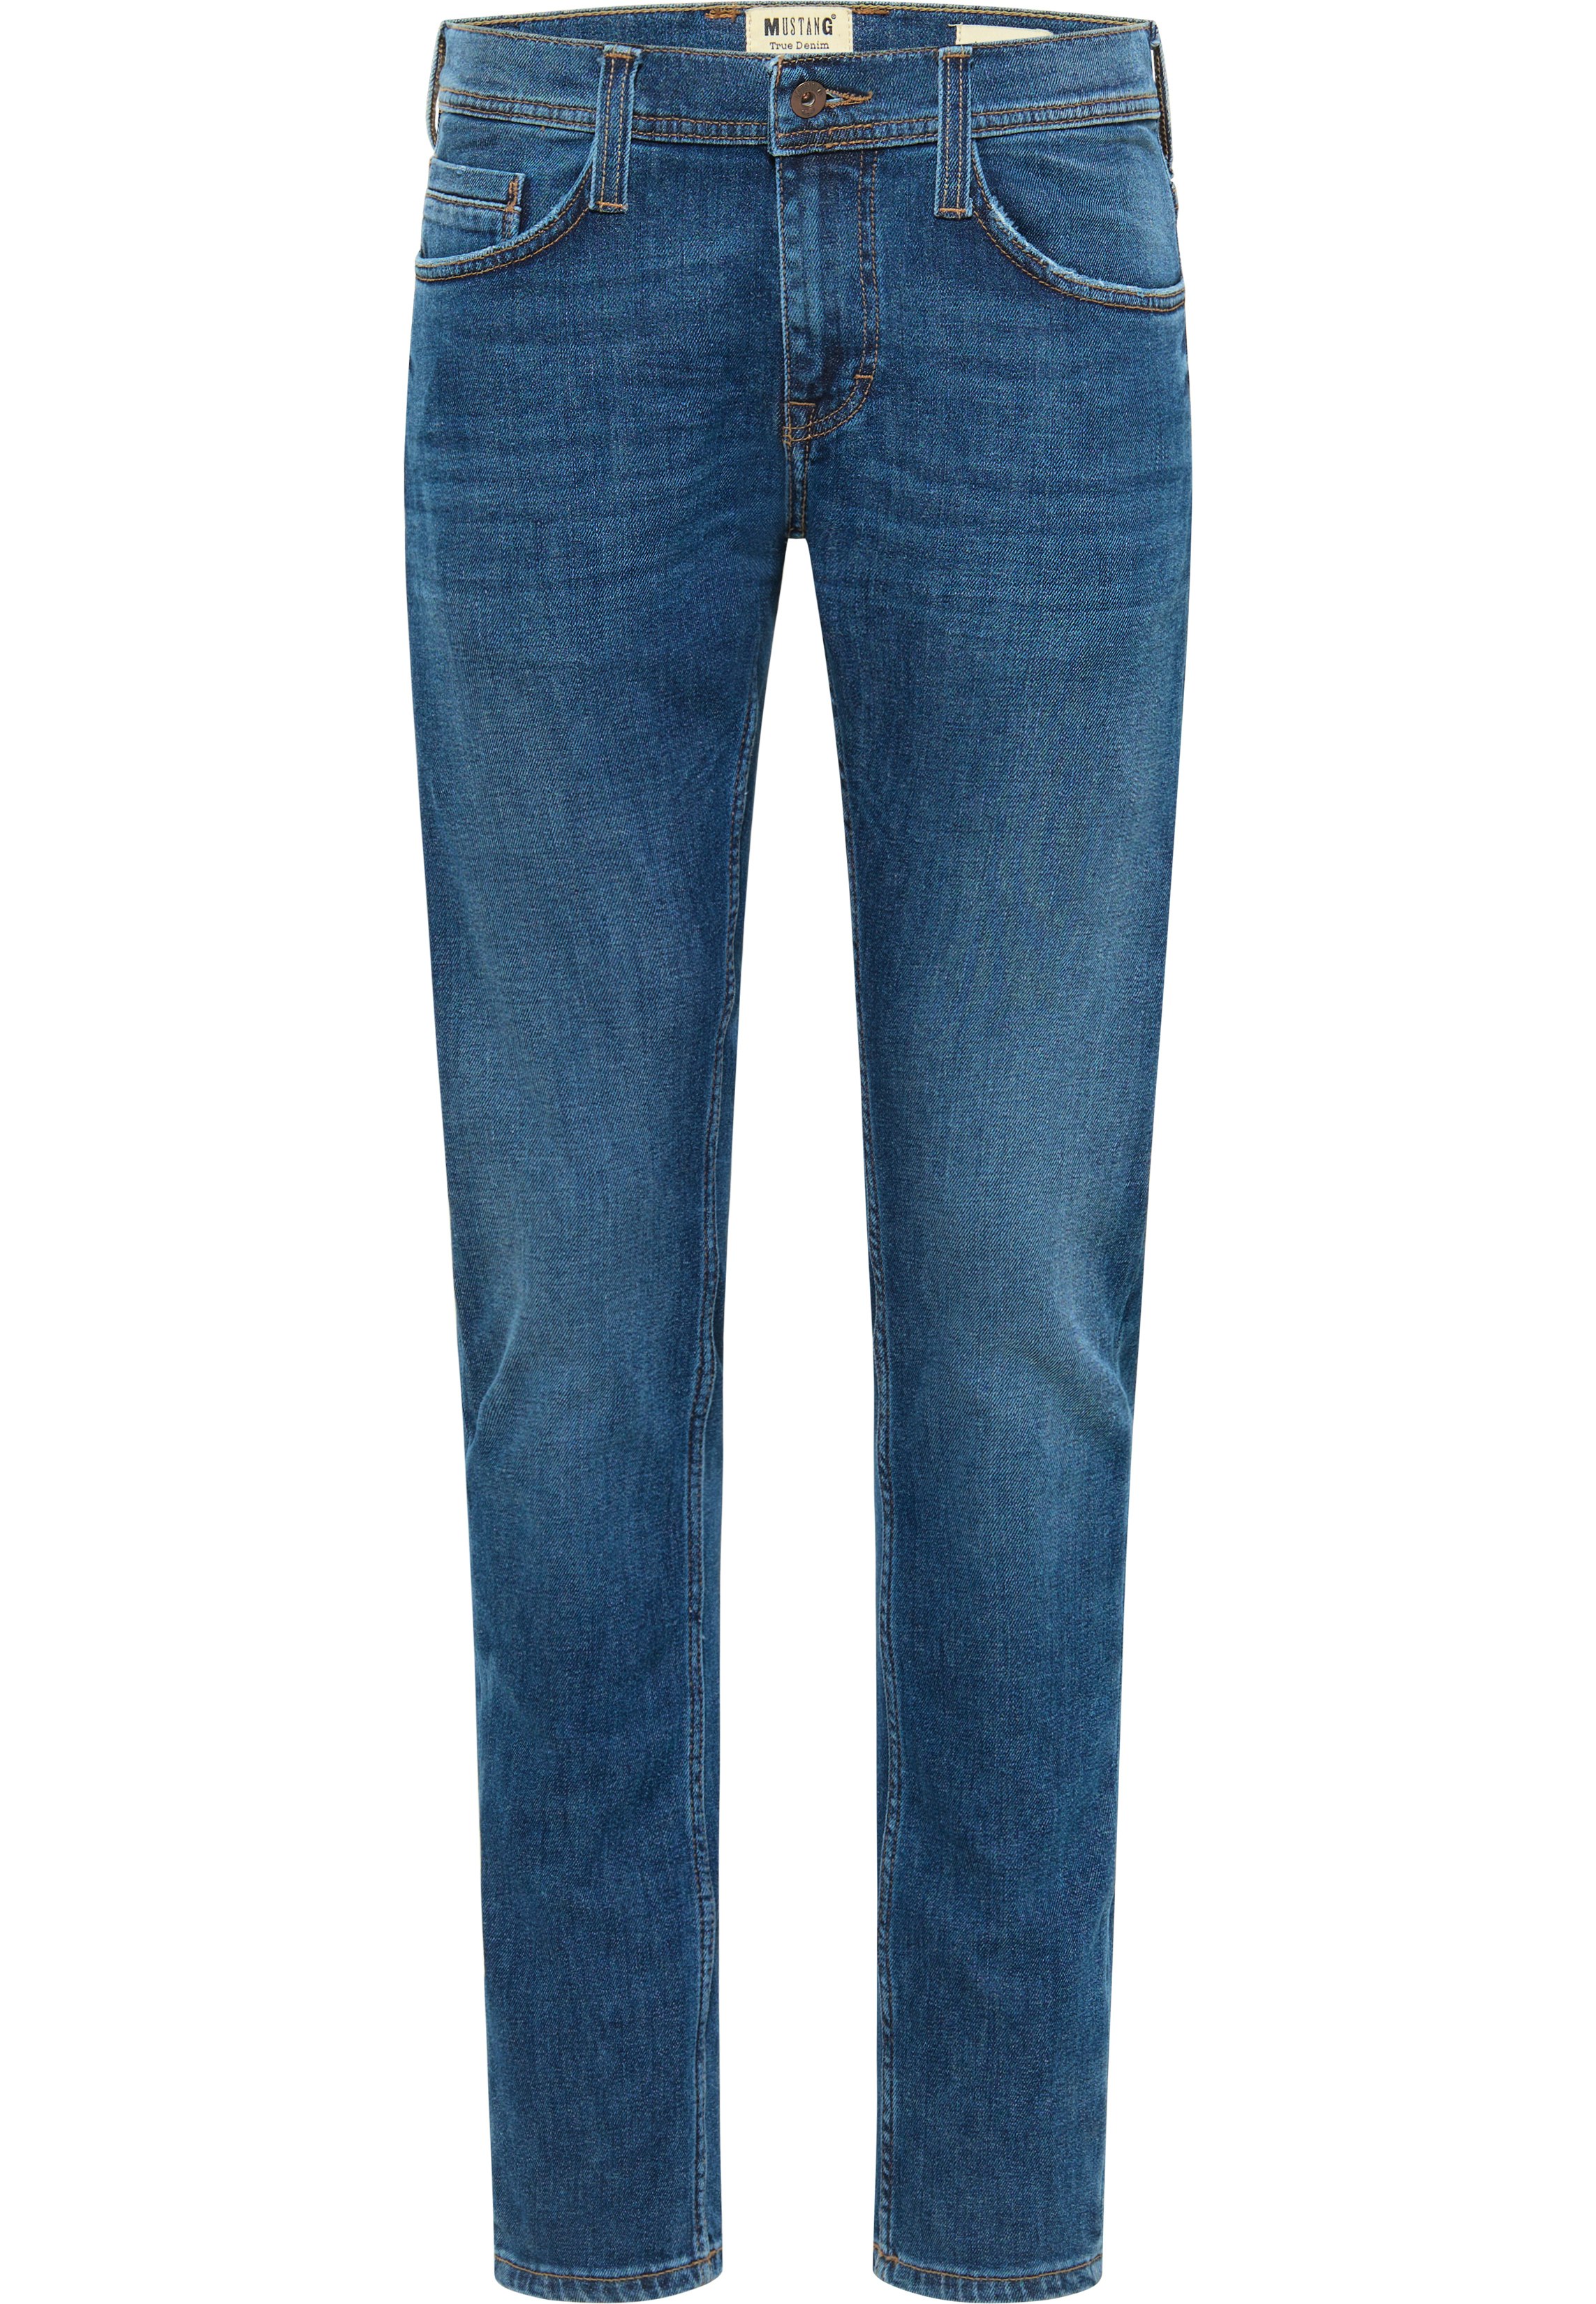 Herren jeans extra lang - Die Auswahl unter allen analysierten Herren jeans extra lang!